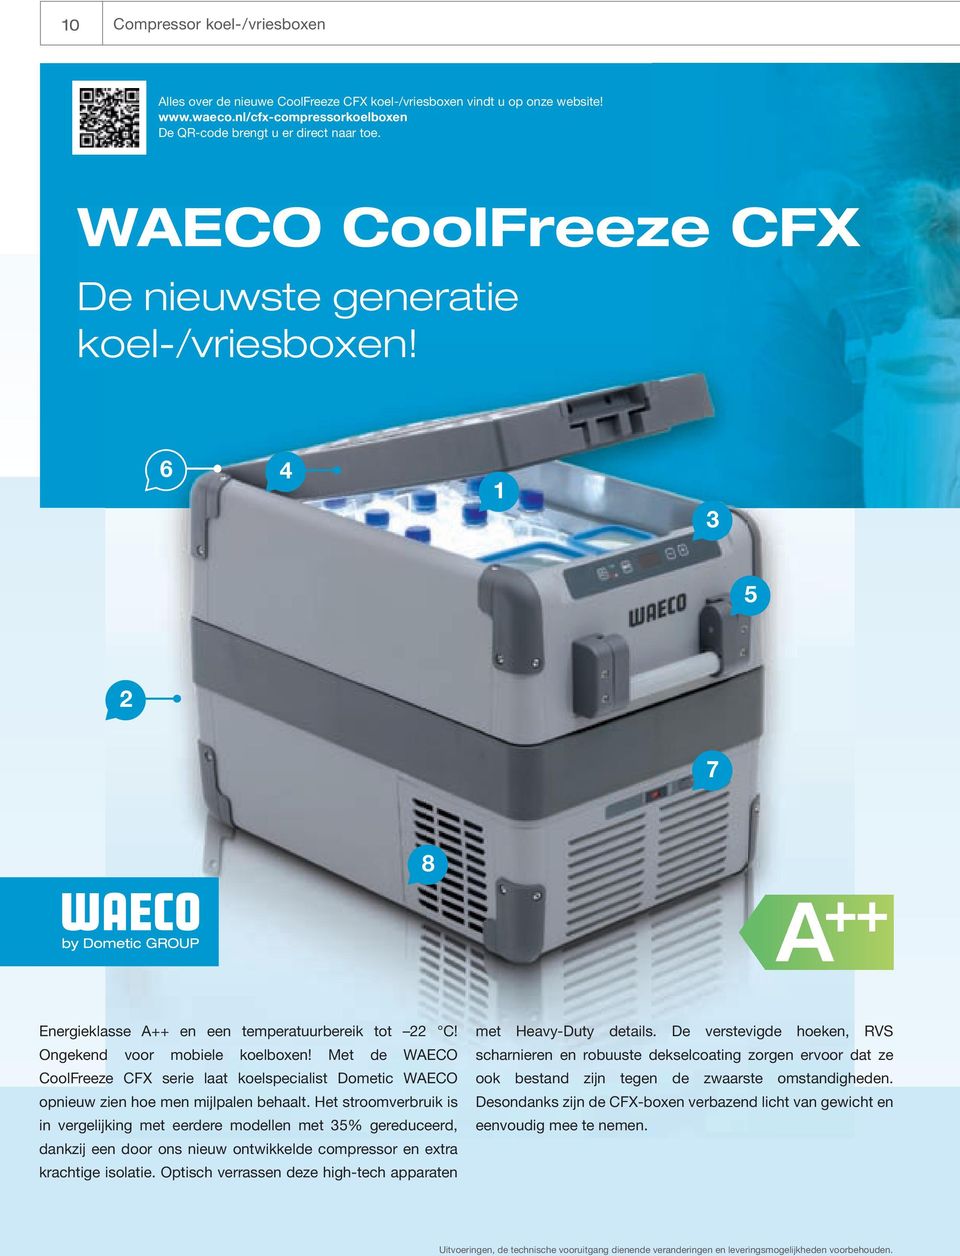 Met de WAECO CoolFreeze CFX serie laat koelspecialist Dometic WAECO opnieuw zien hoe men mijlpalen behaalt.